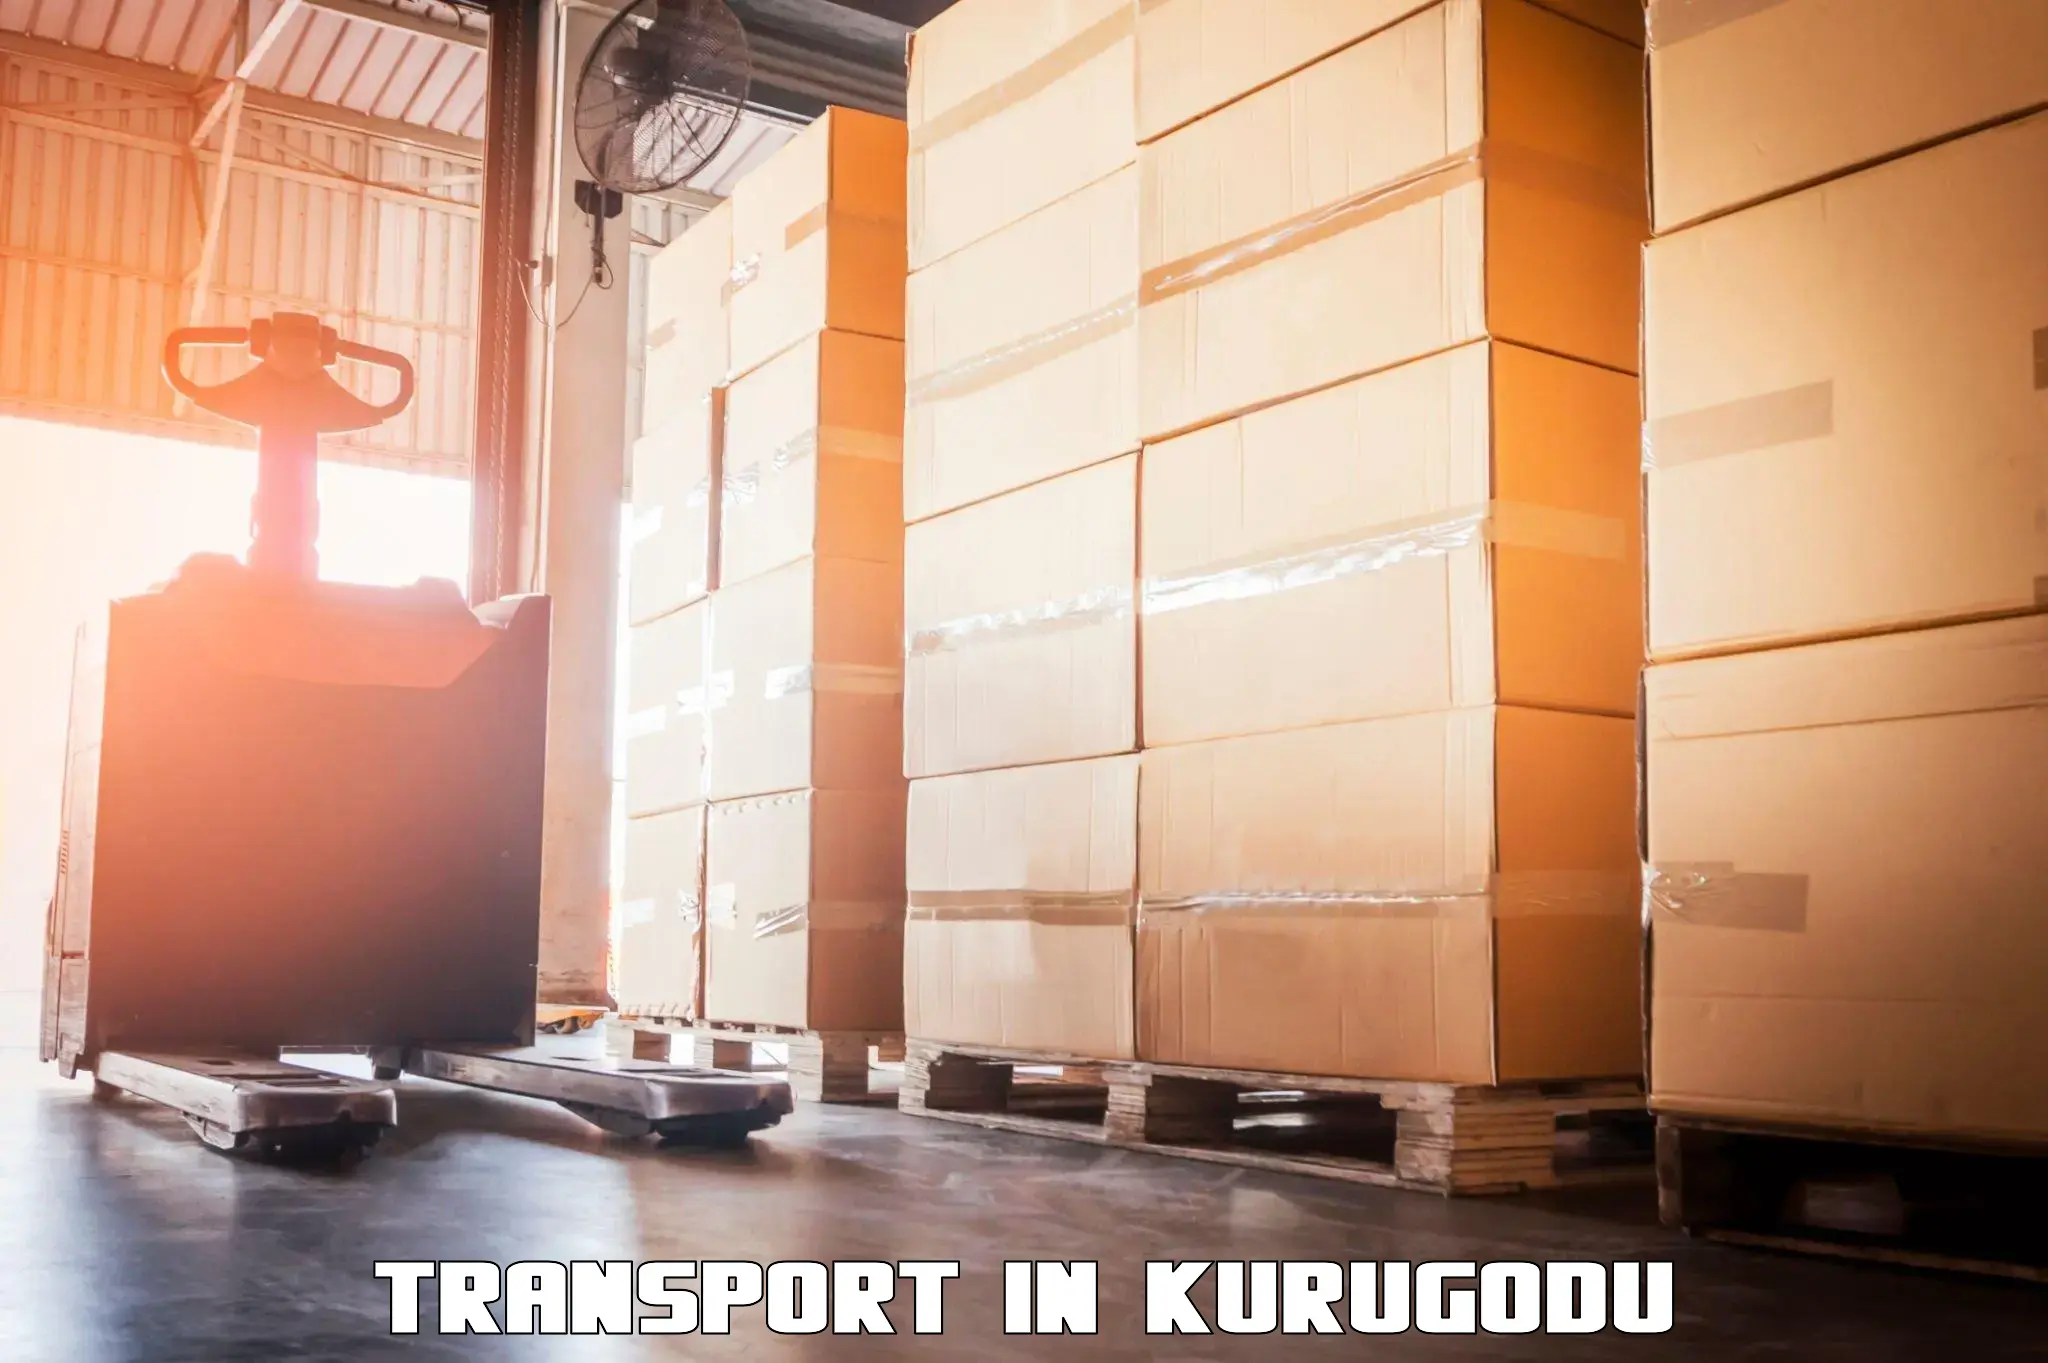 Parcel transport services in Kurugodu